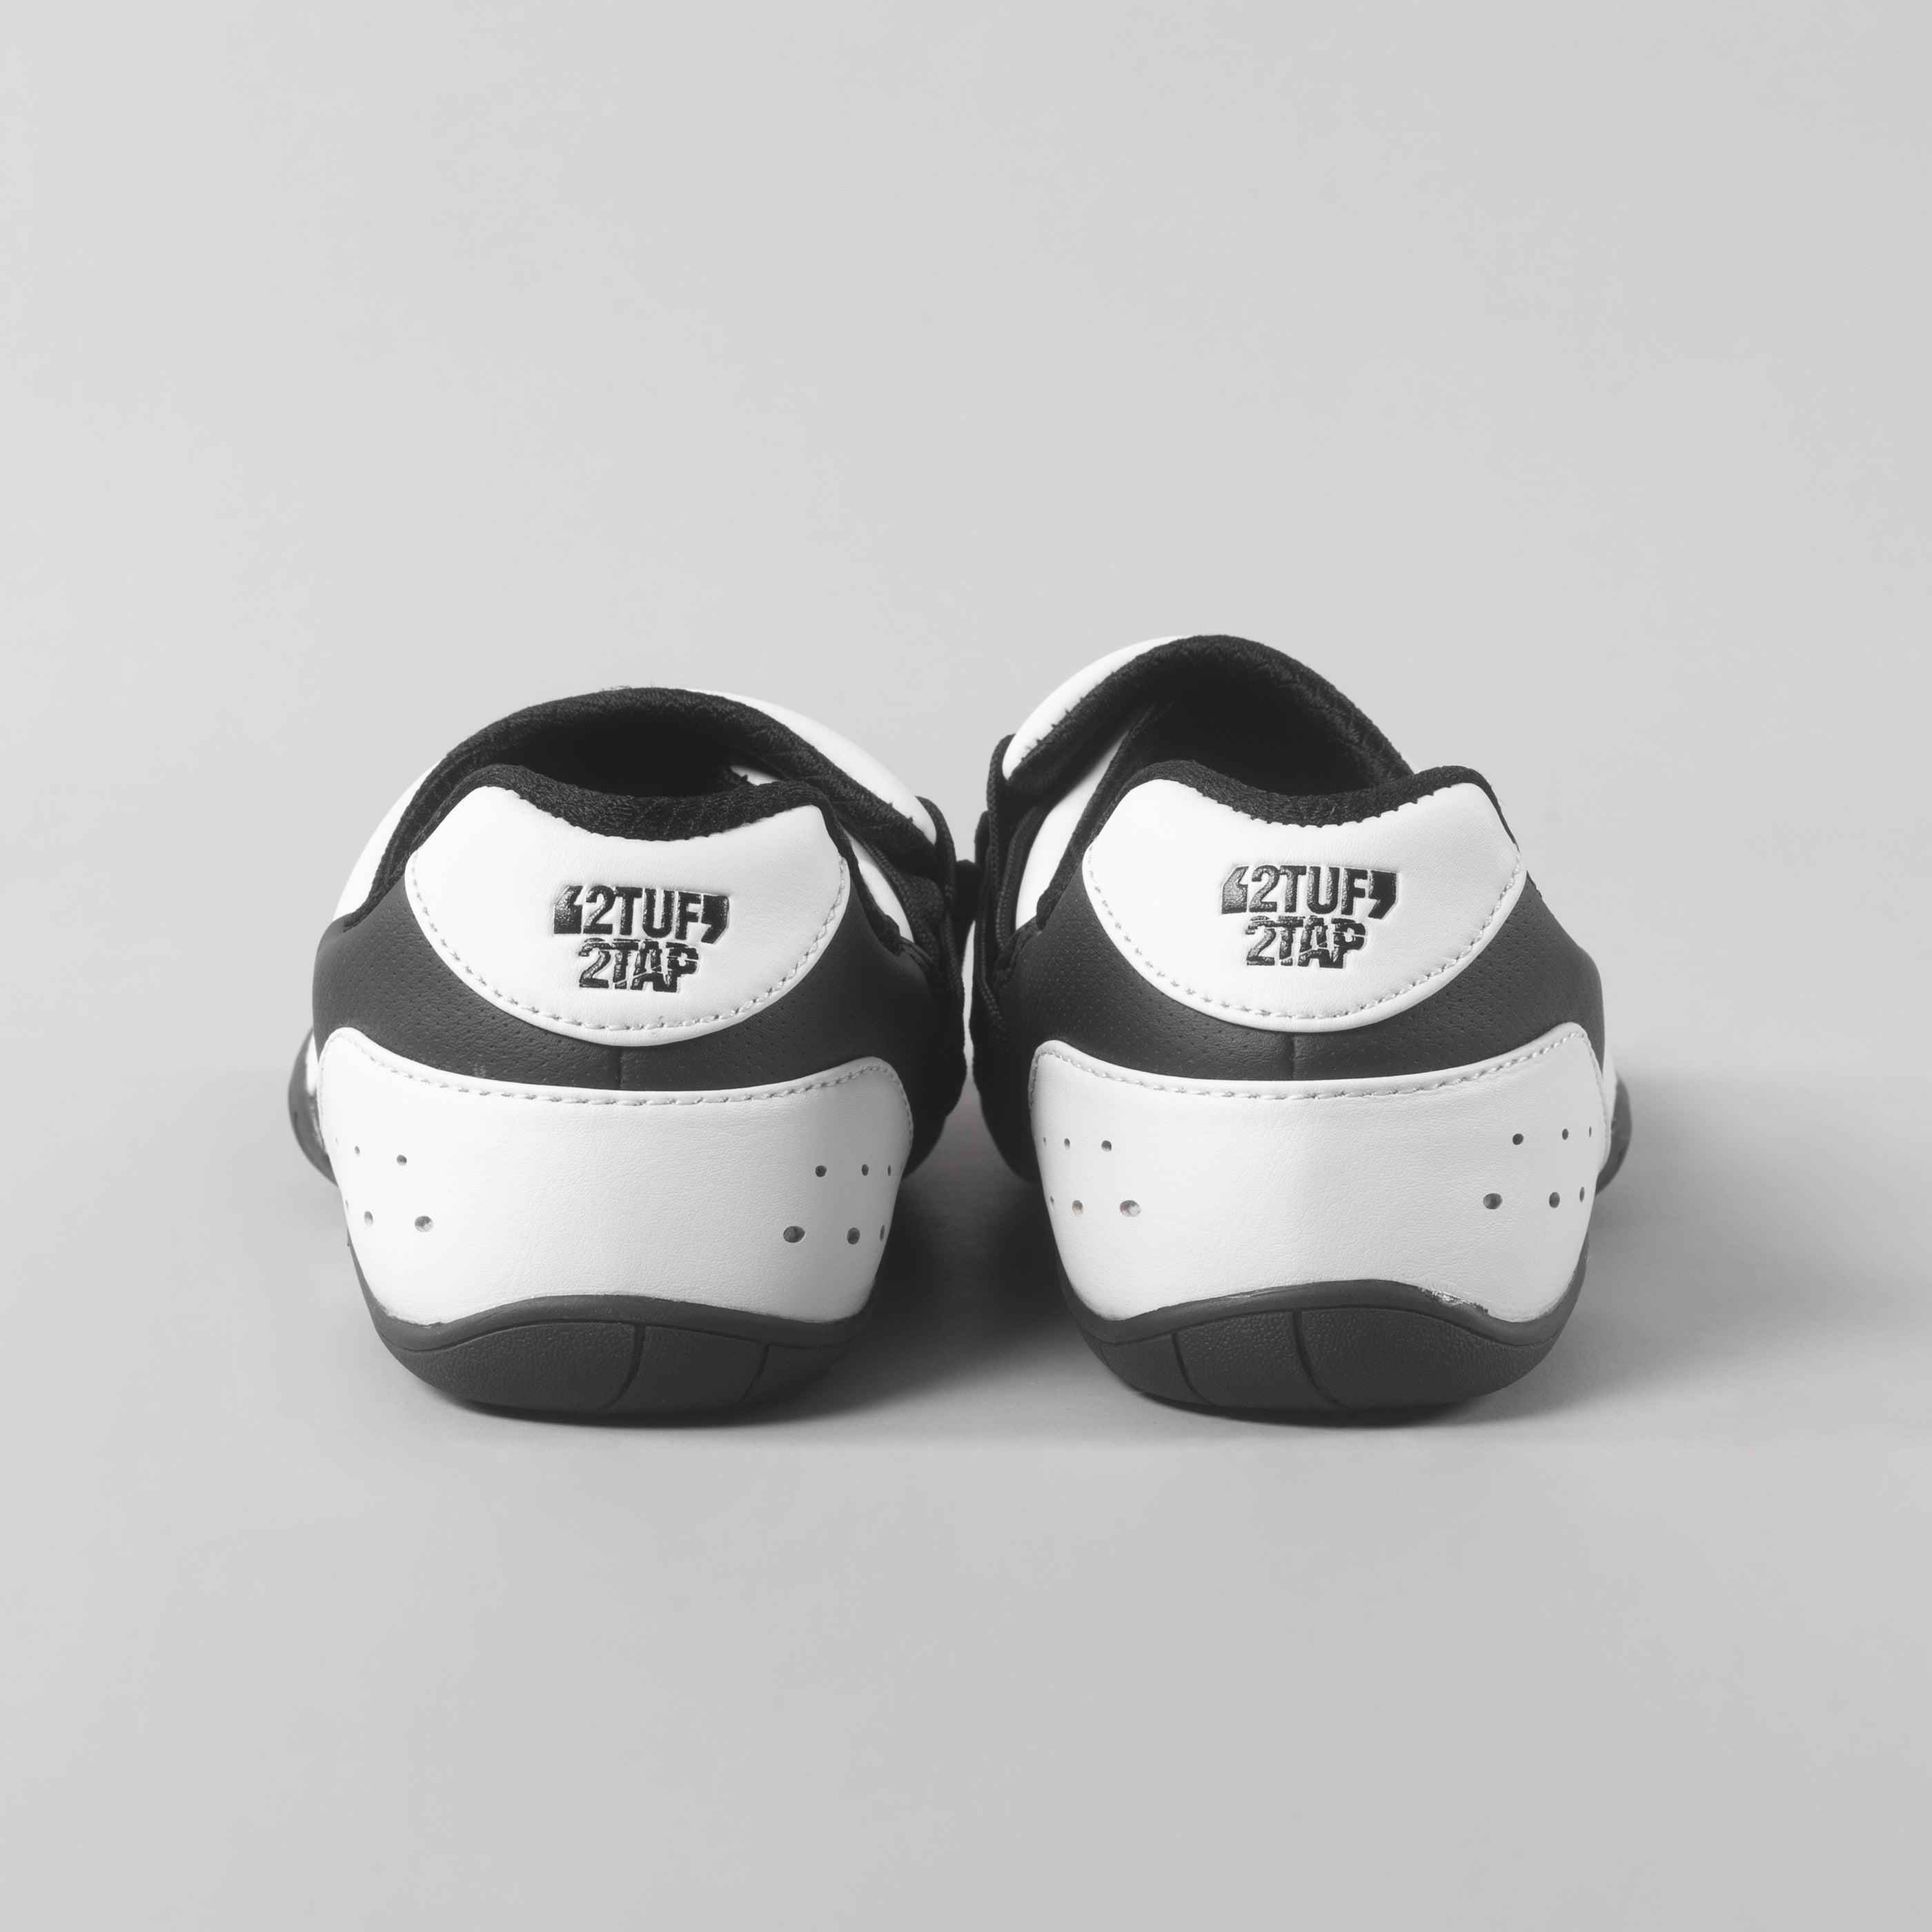 'Velocity' Taekwondo Training Shoes - White/Black 2TUF2TAP